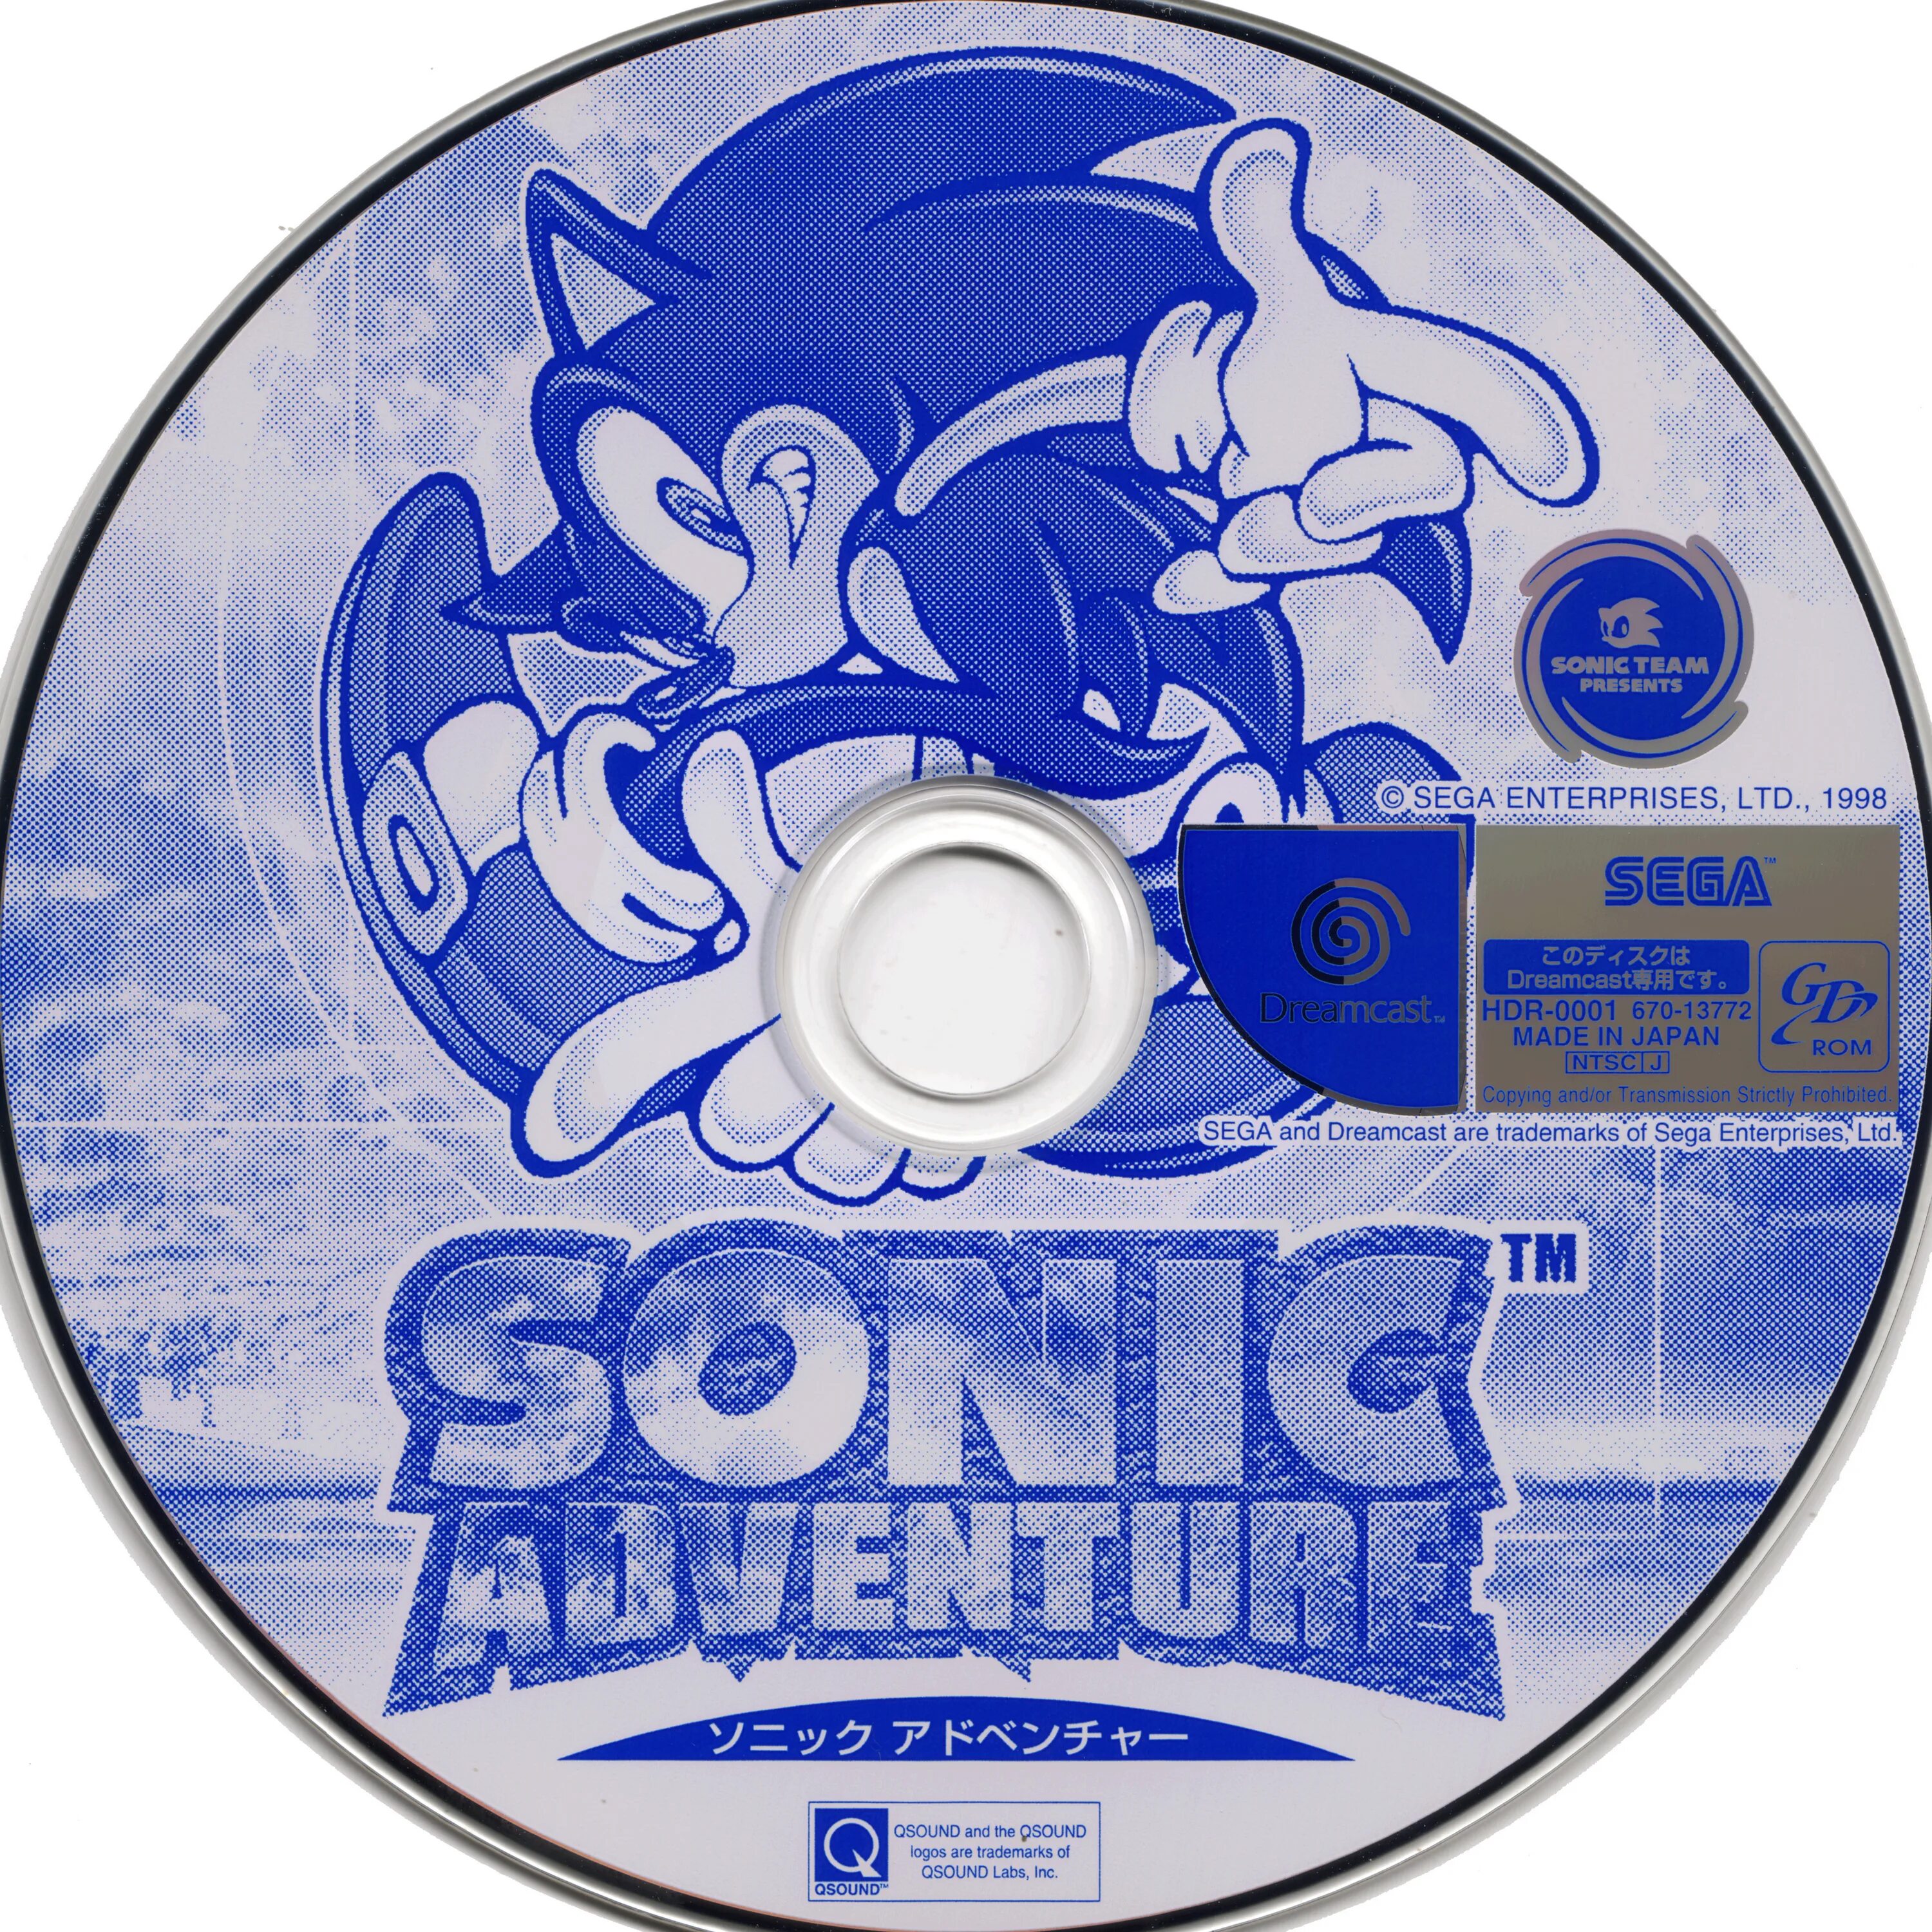 Sonic Adventure 2 диск. Dreamcast диск Sonic. Sonic Adventure Dreamcast обложка. Sonic Adventure диск Sega. Dreamcast roms sonic